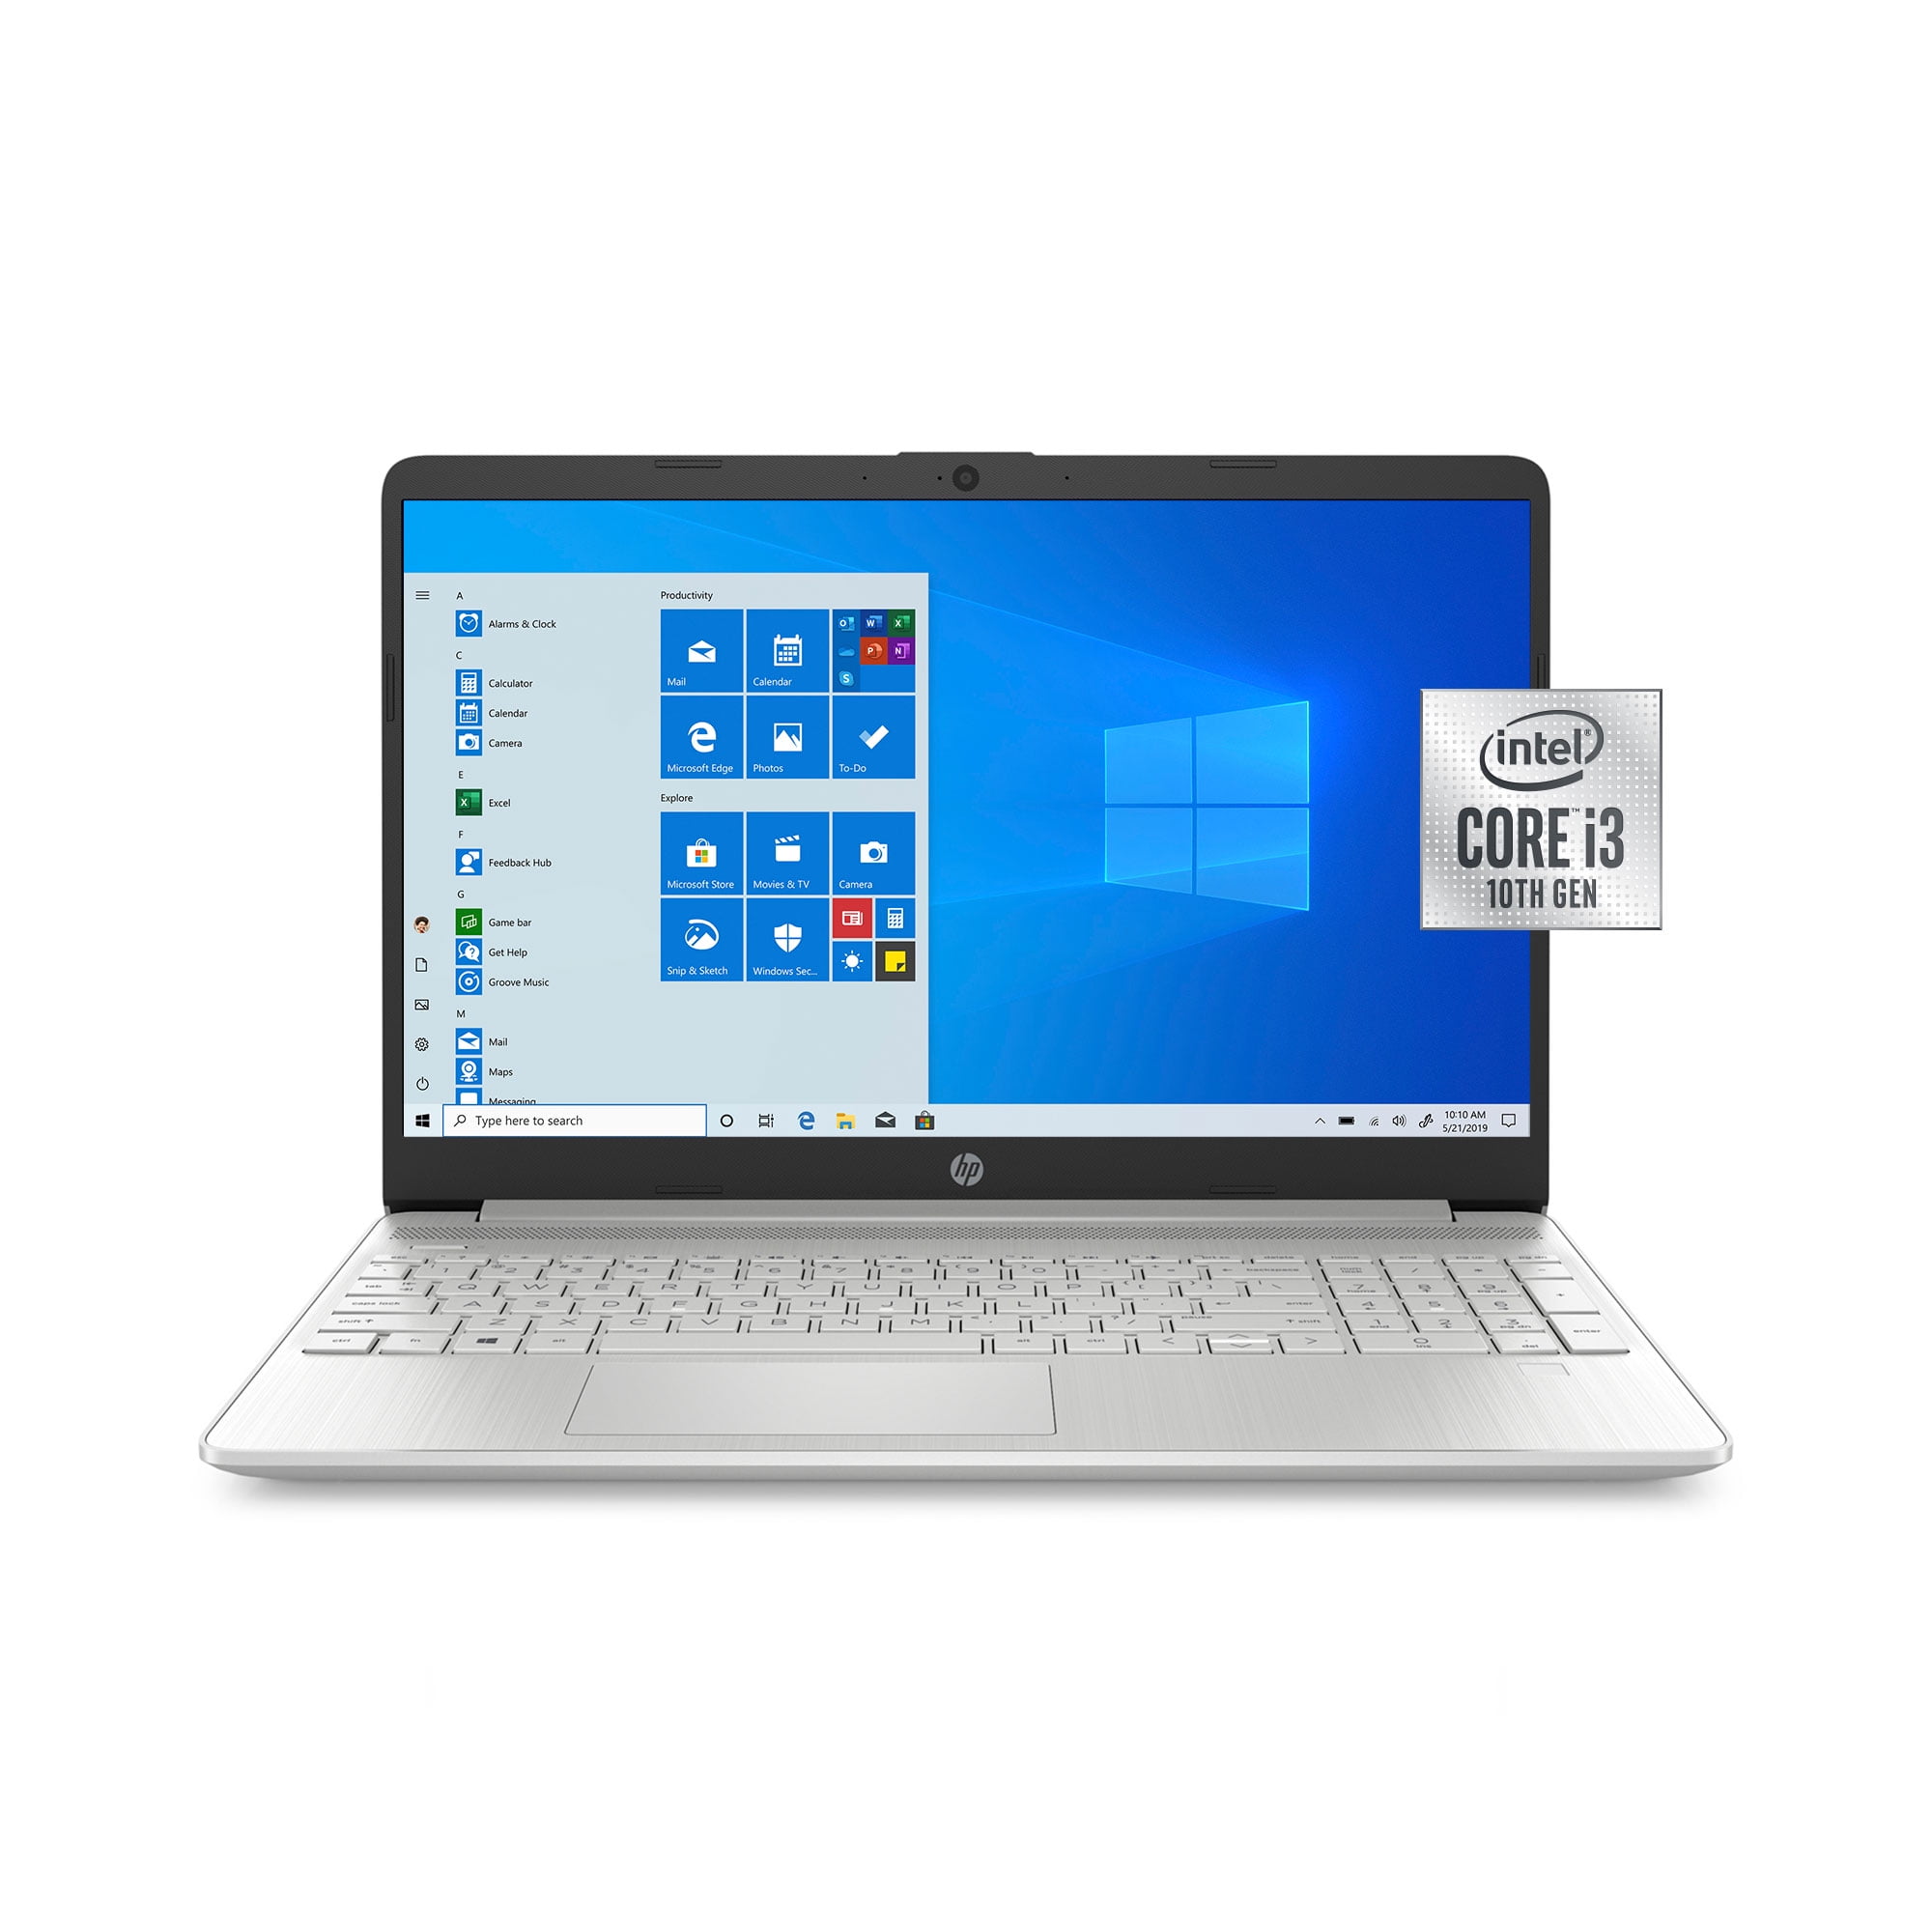 8 GB di RAM HP EliteBook 1040 g1 Windows 10 Pro a merce i5-4310u HD + 256 GB SSD 